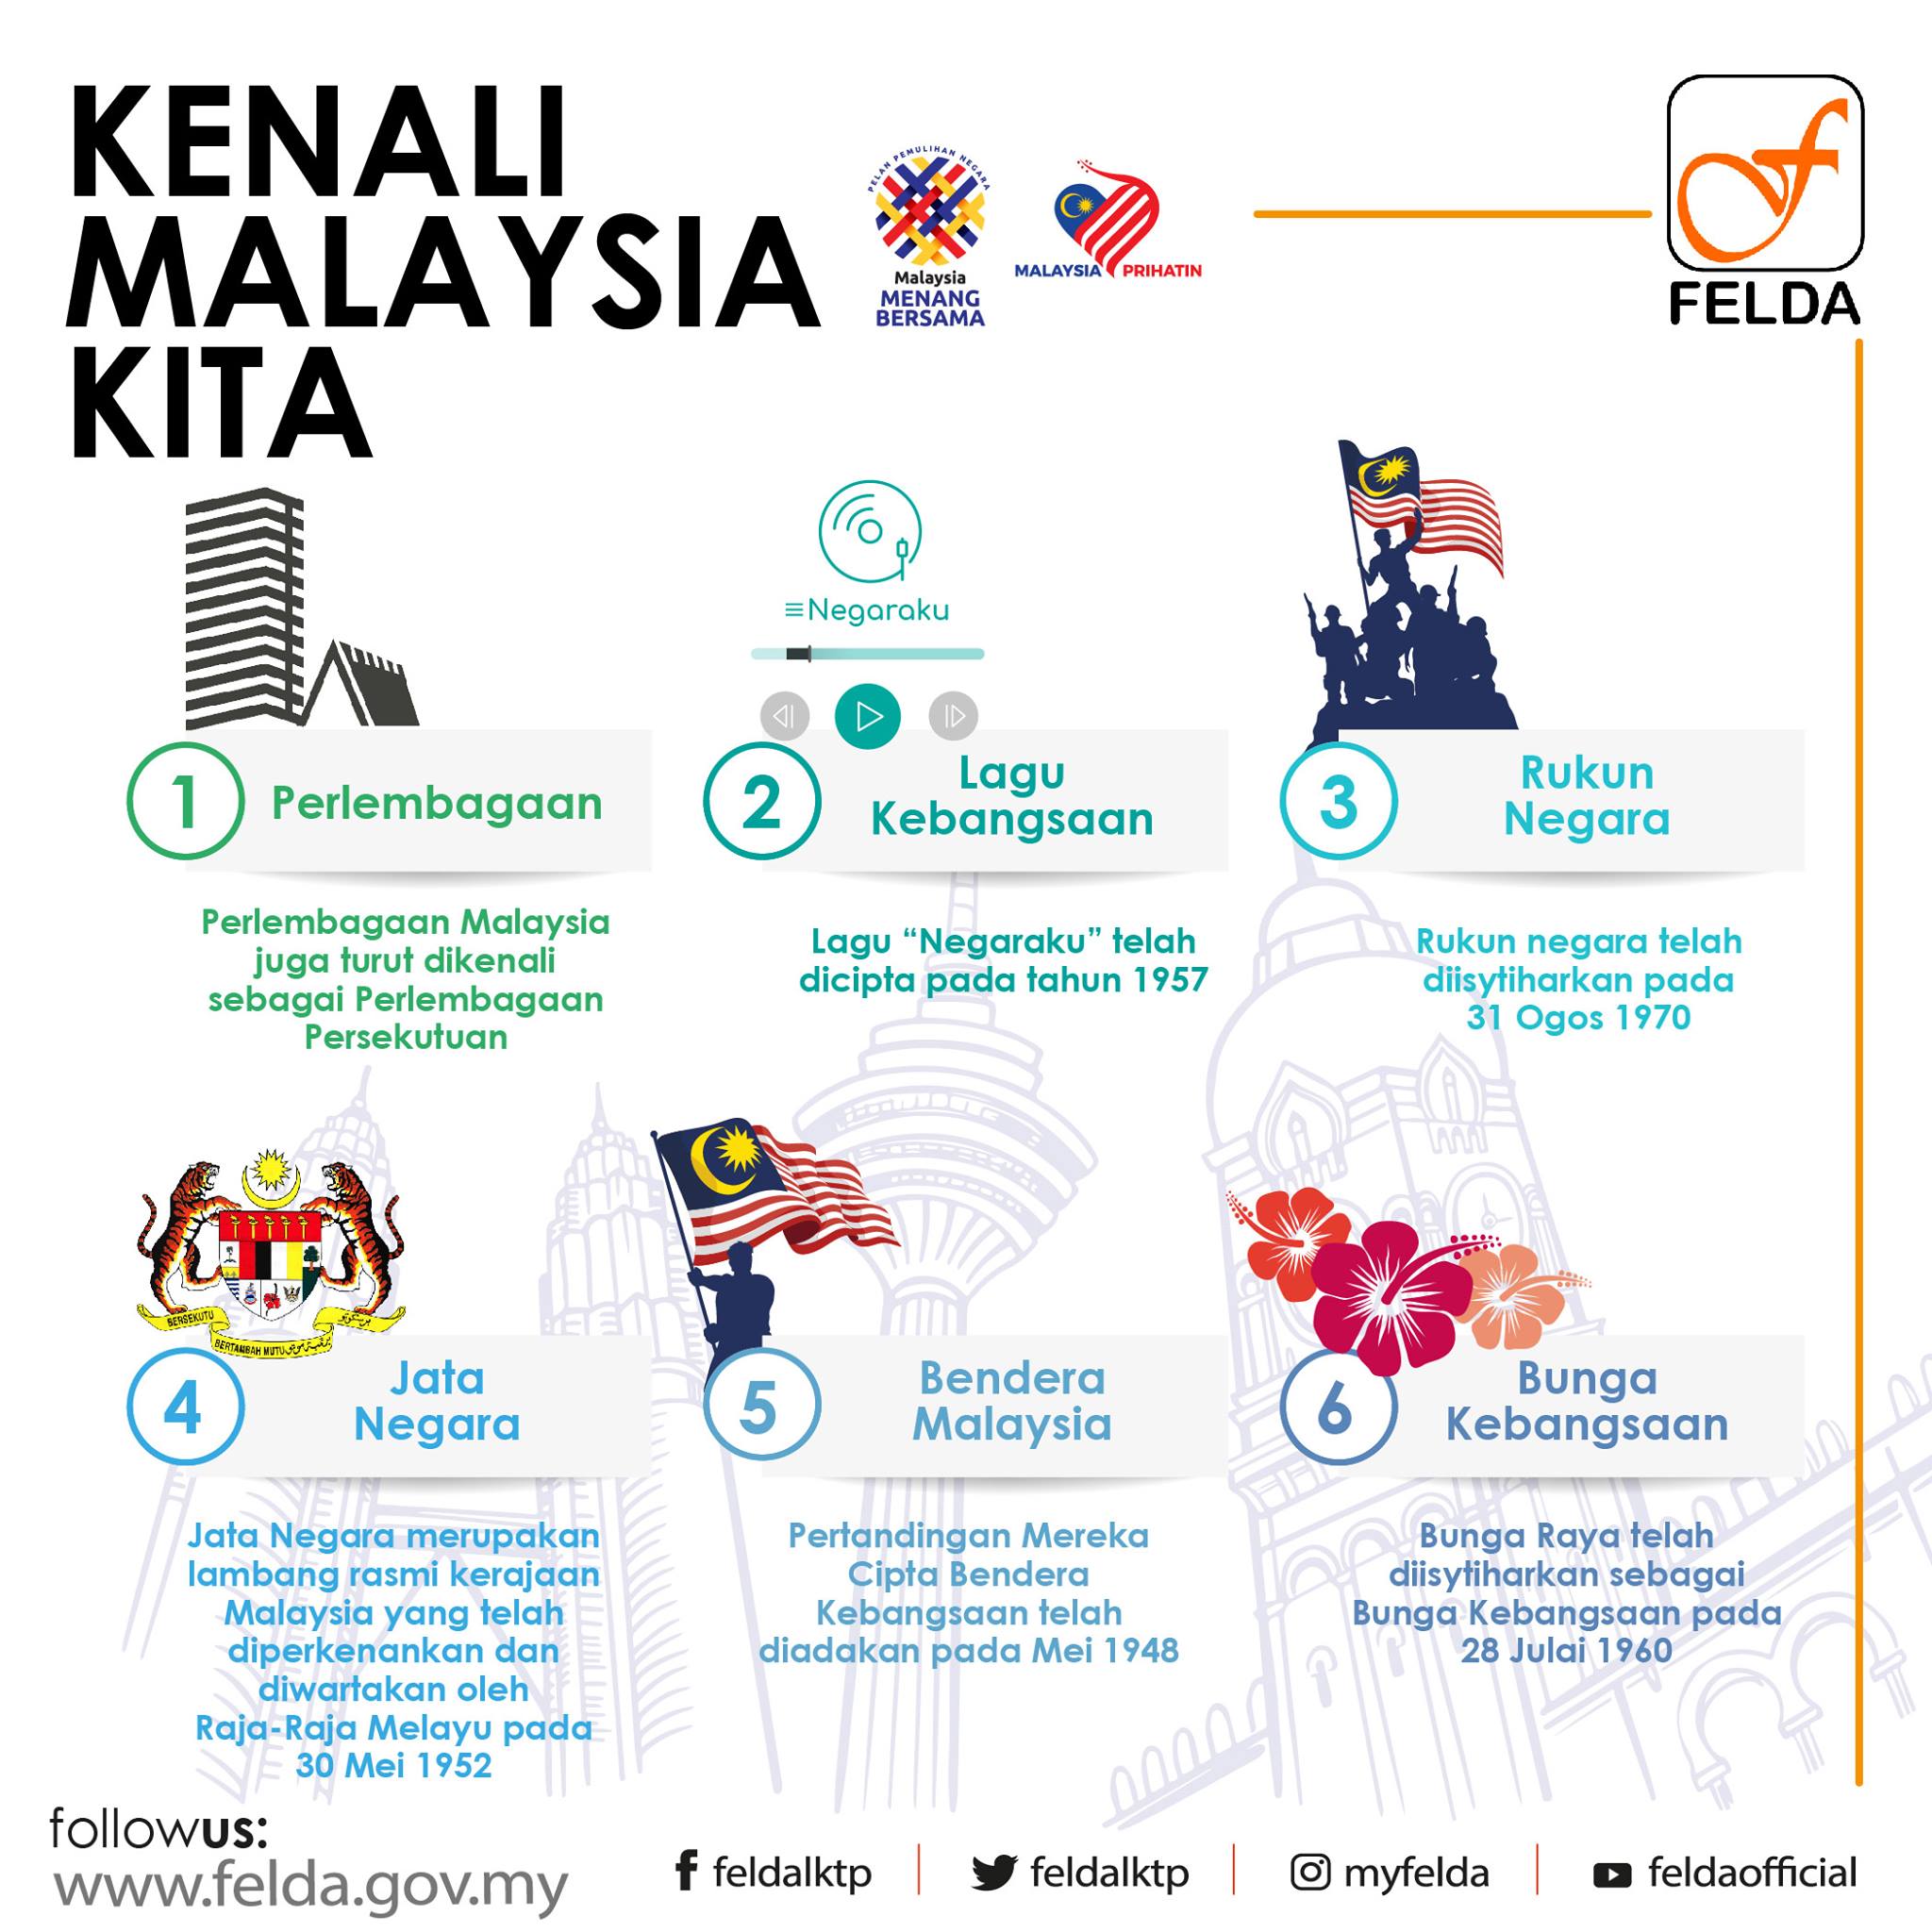 Kenali Malaysia Kita